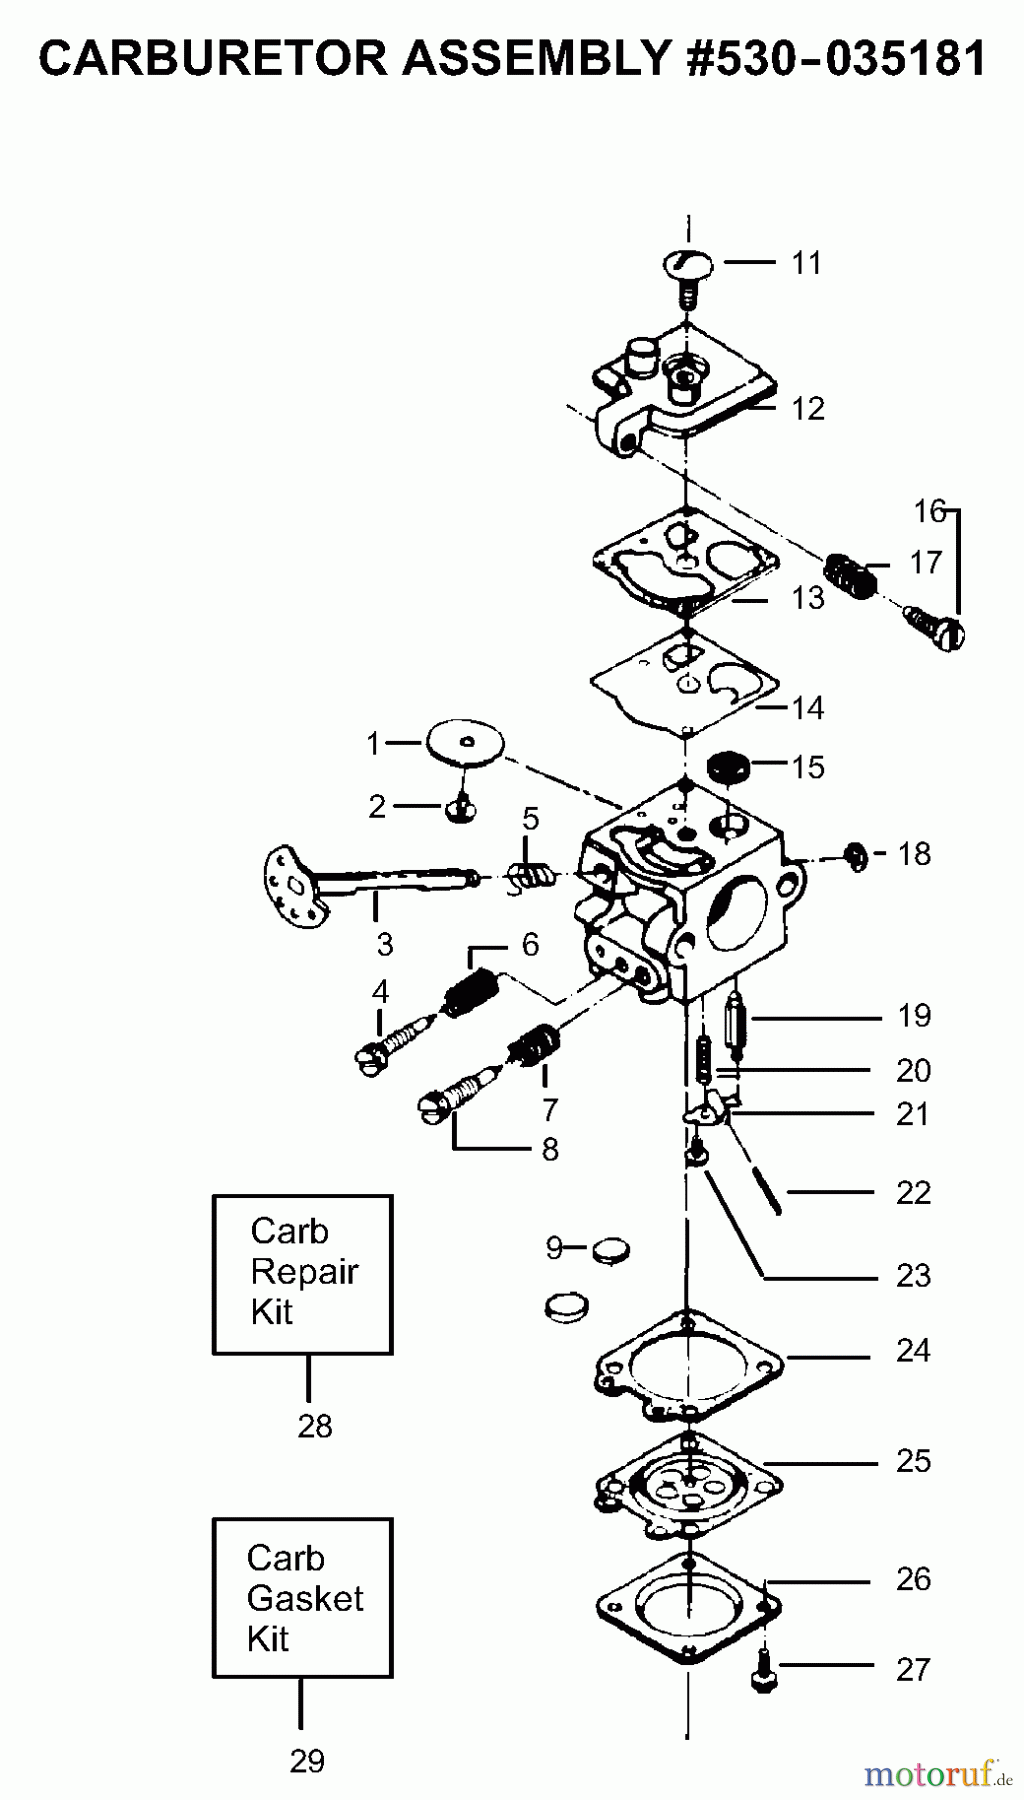  Poulan / Weed Eater Motorsägen PP205 - Poulan Pro Chainsaw Carburetor Assembly P/N 530035181